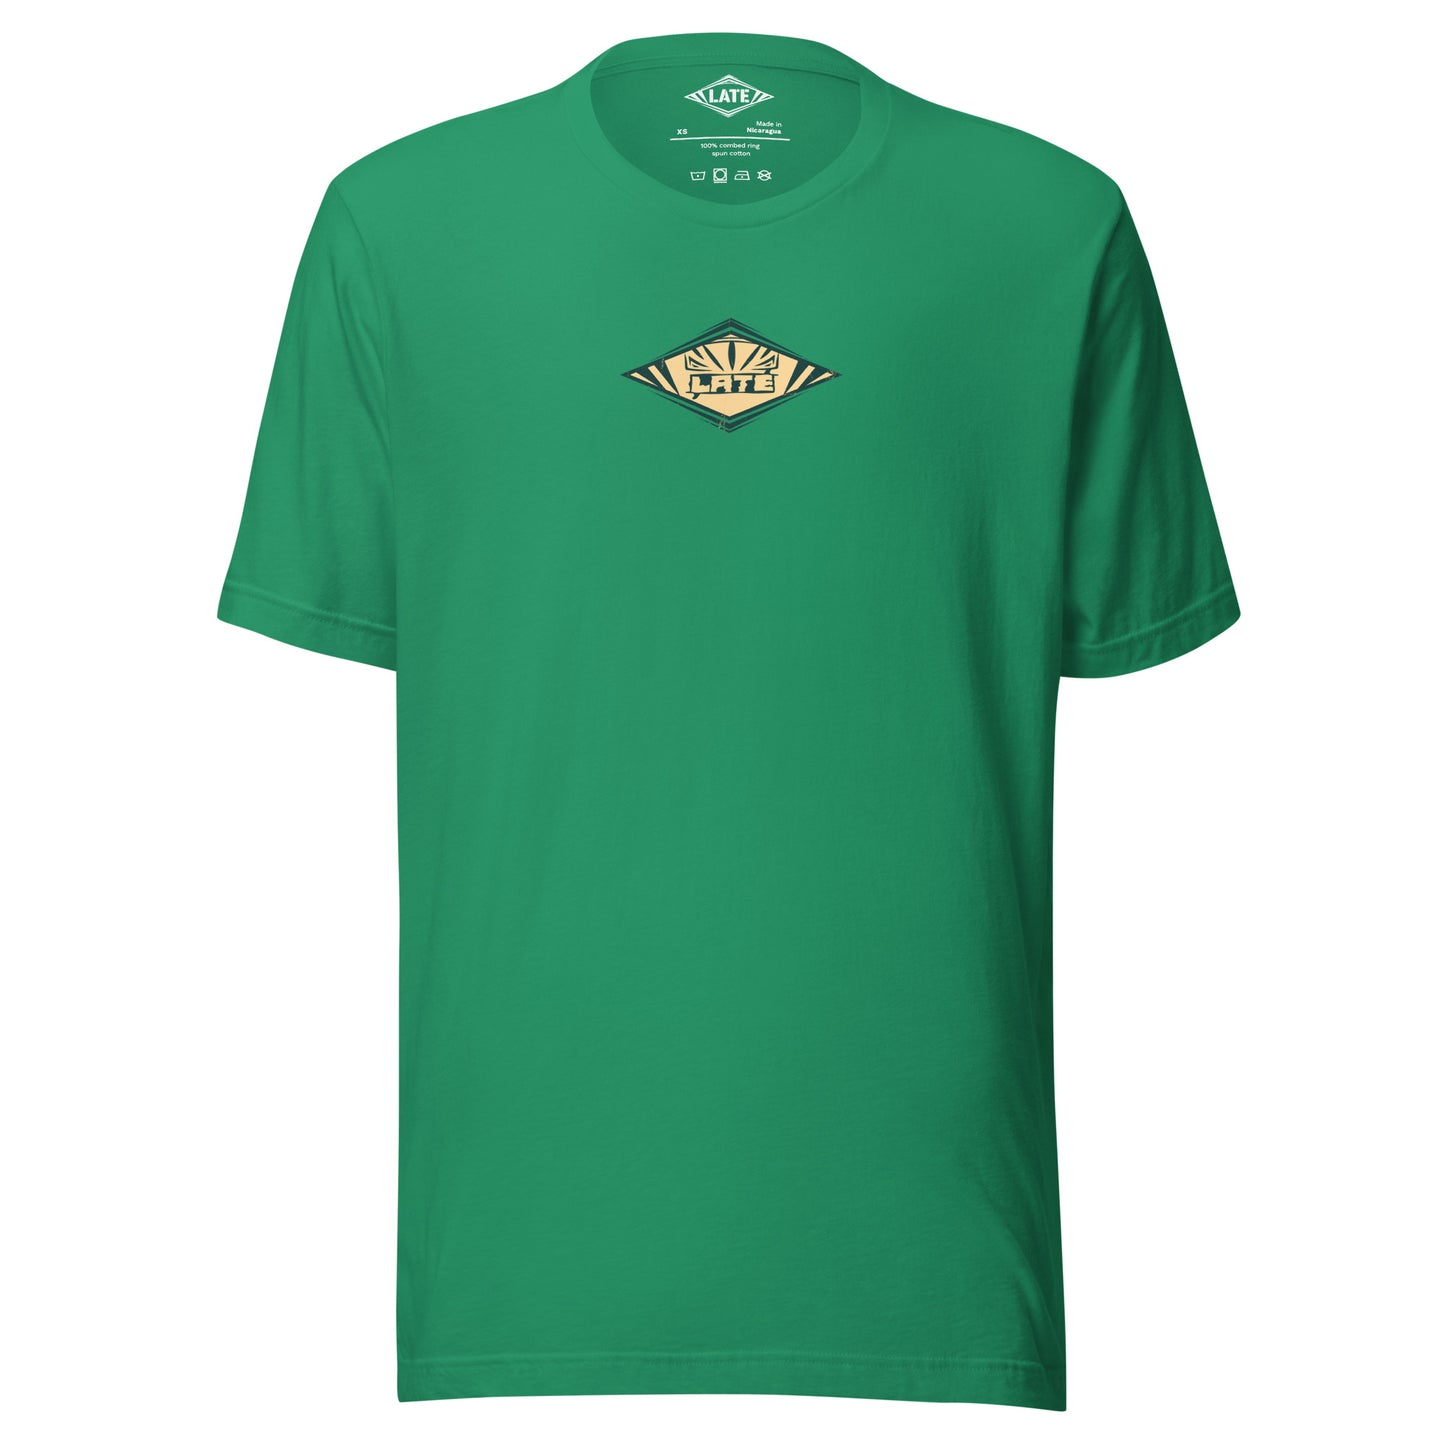 T-Shirt rétro Radical Wave, inspiration maori et vagues des spots mondiaux. Tee shirt unisexe de face vert kelly